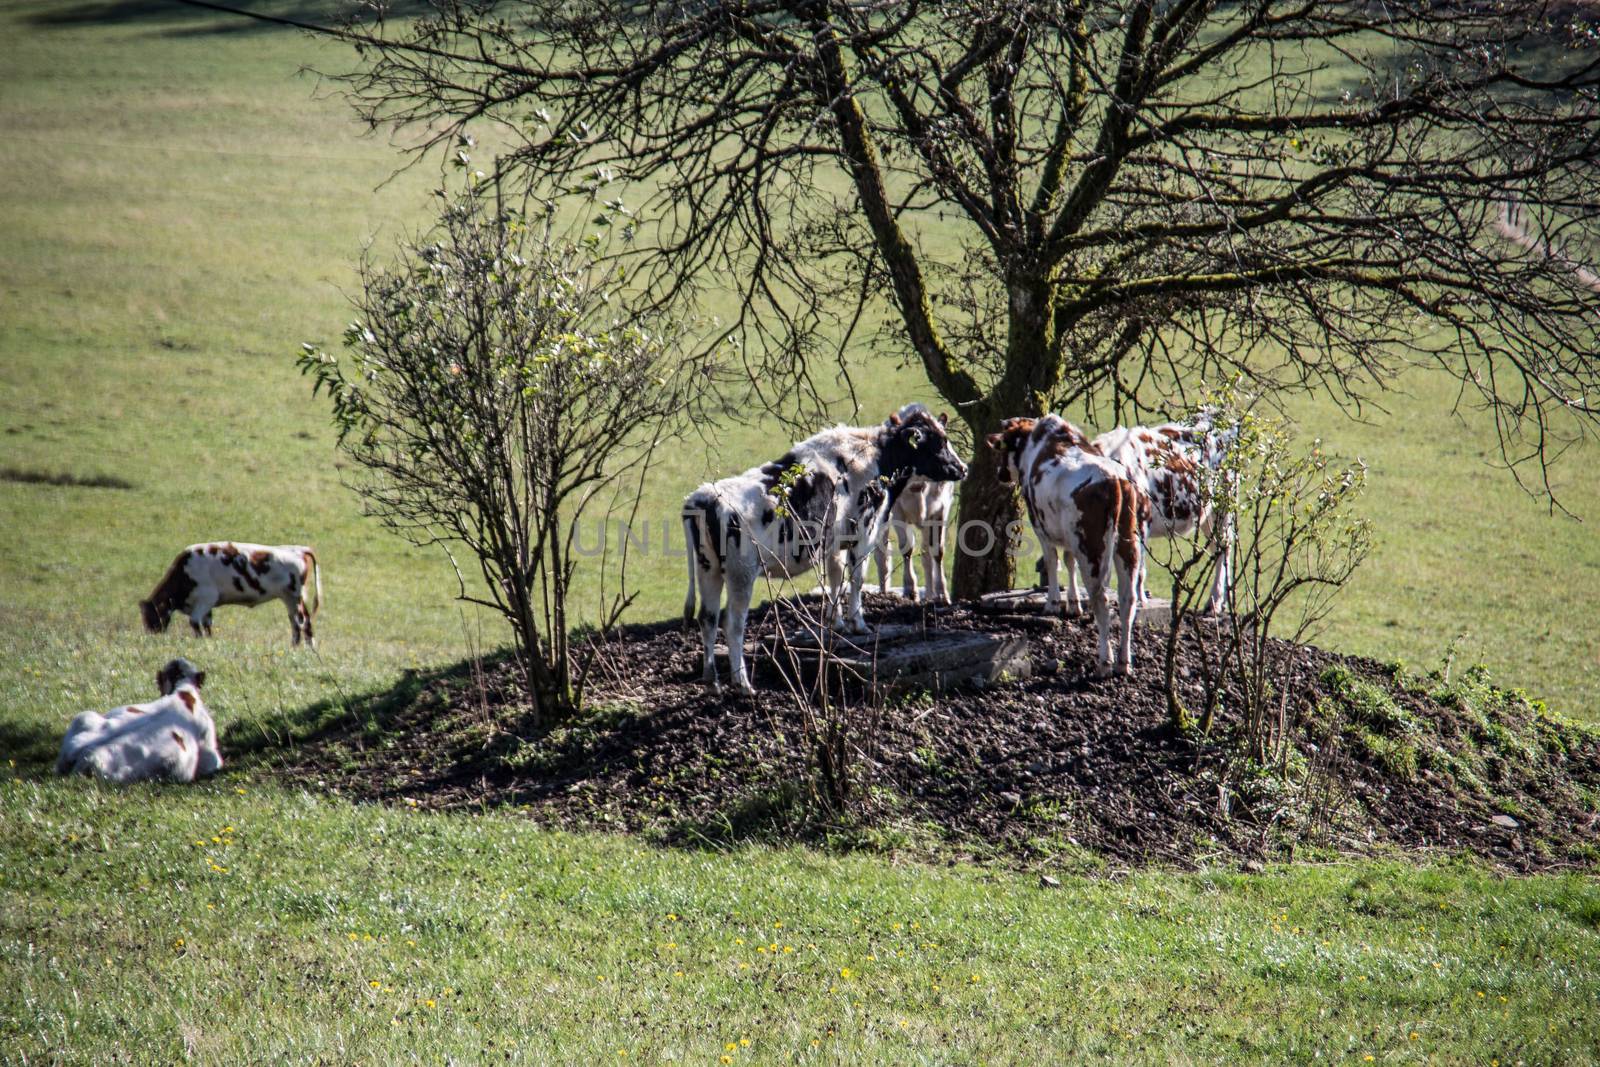 Cows seek shade under tree by Dr-Lange